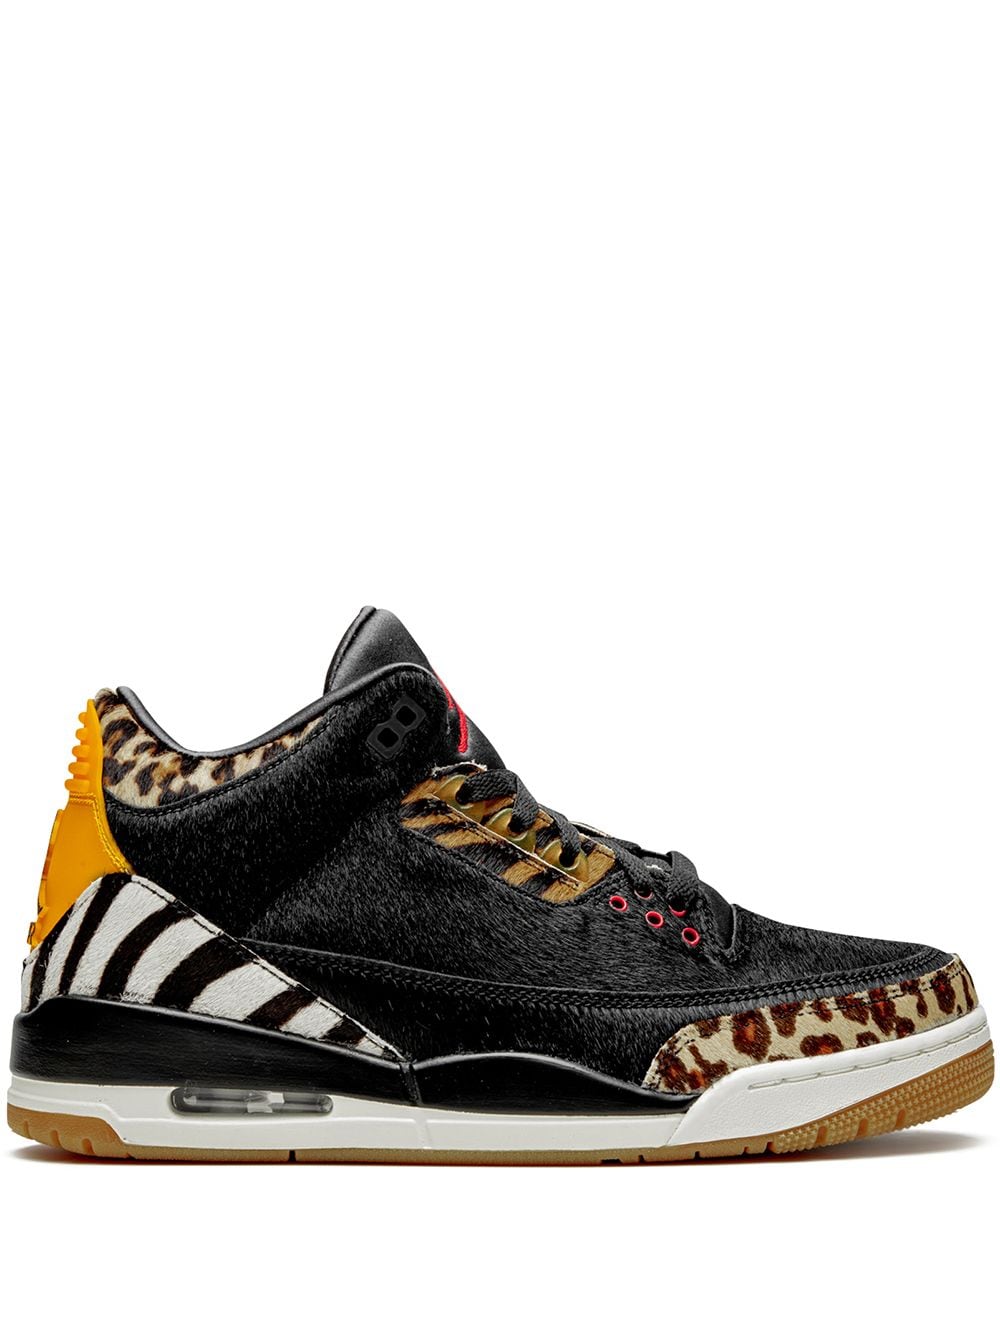 Jordan Air Jordan 3 Retro "Animal Instinct" sneakers - Black